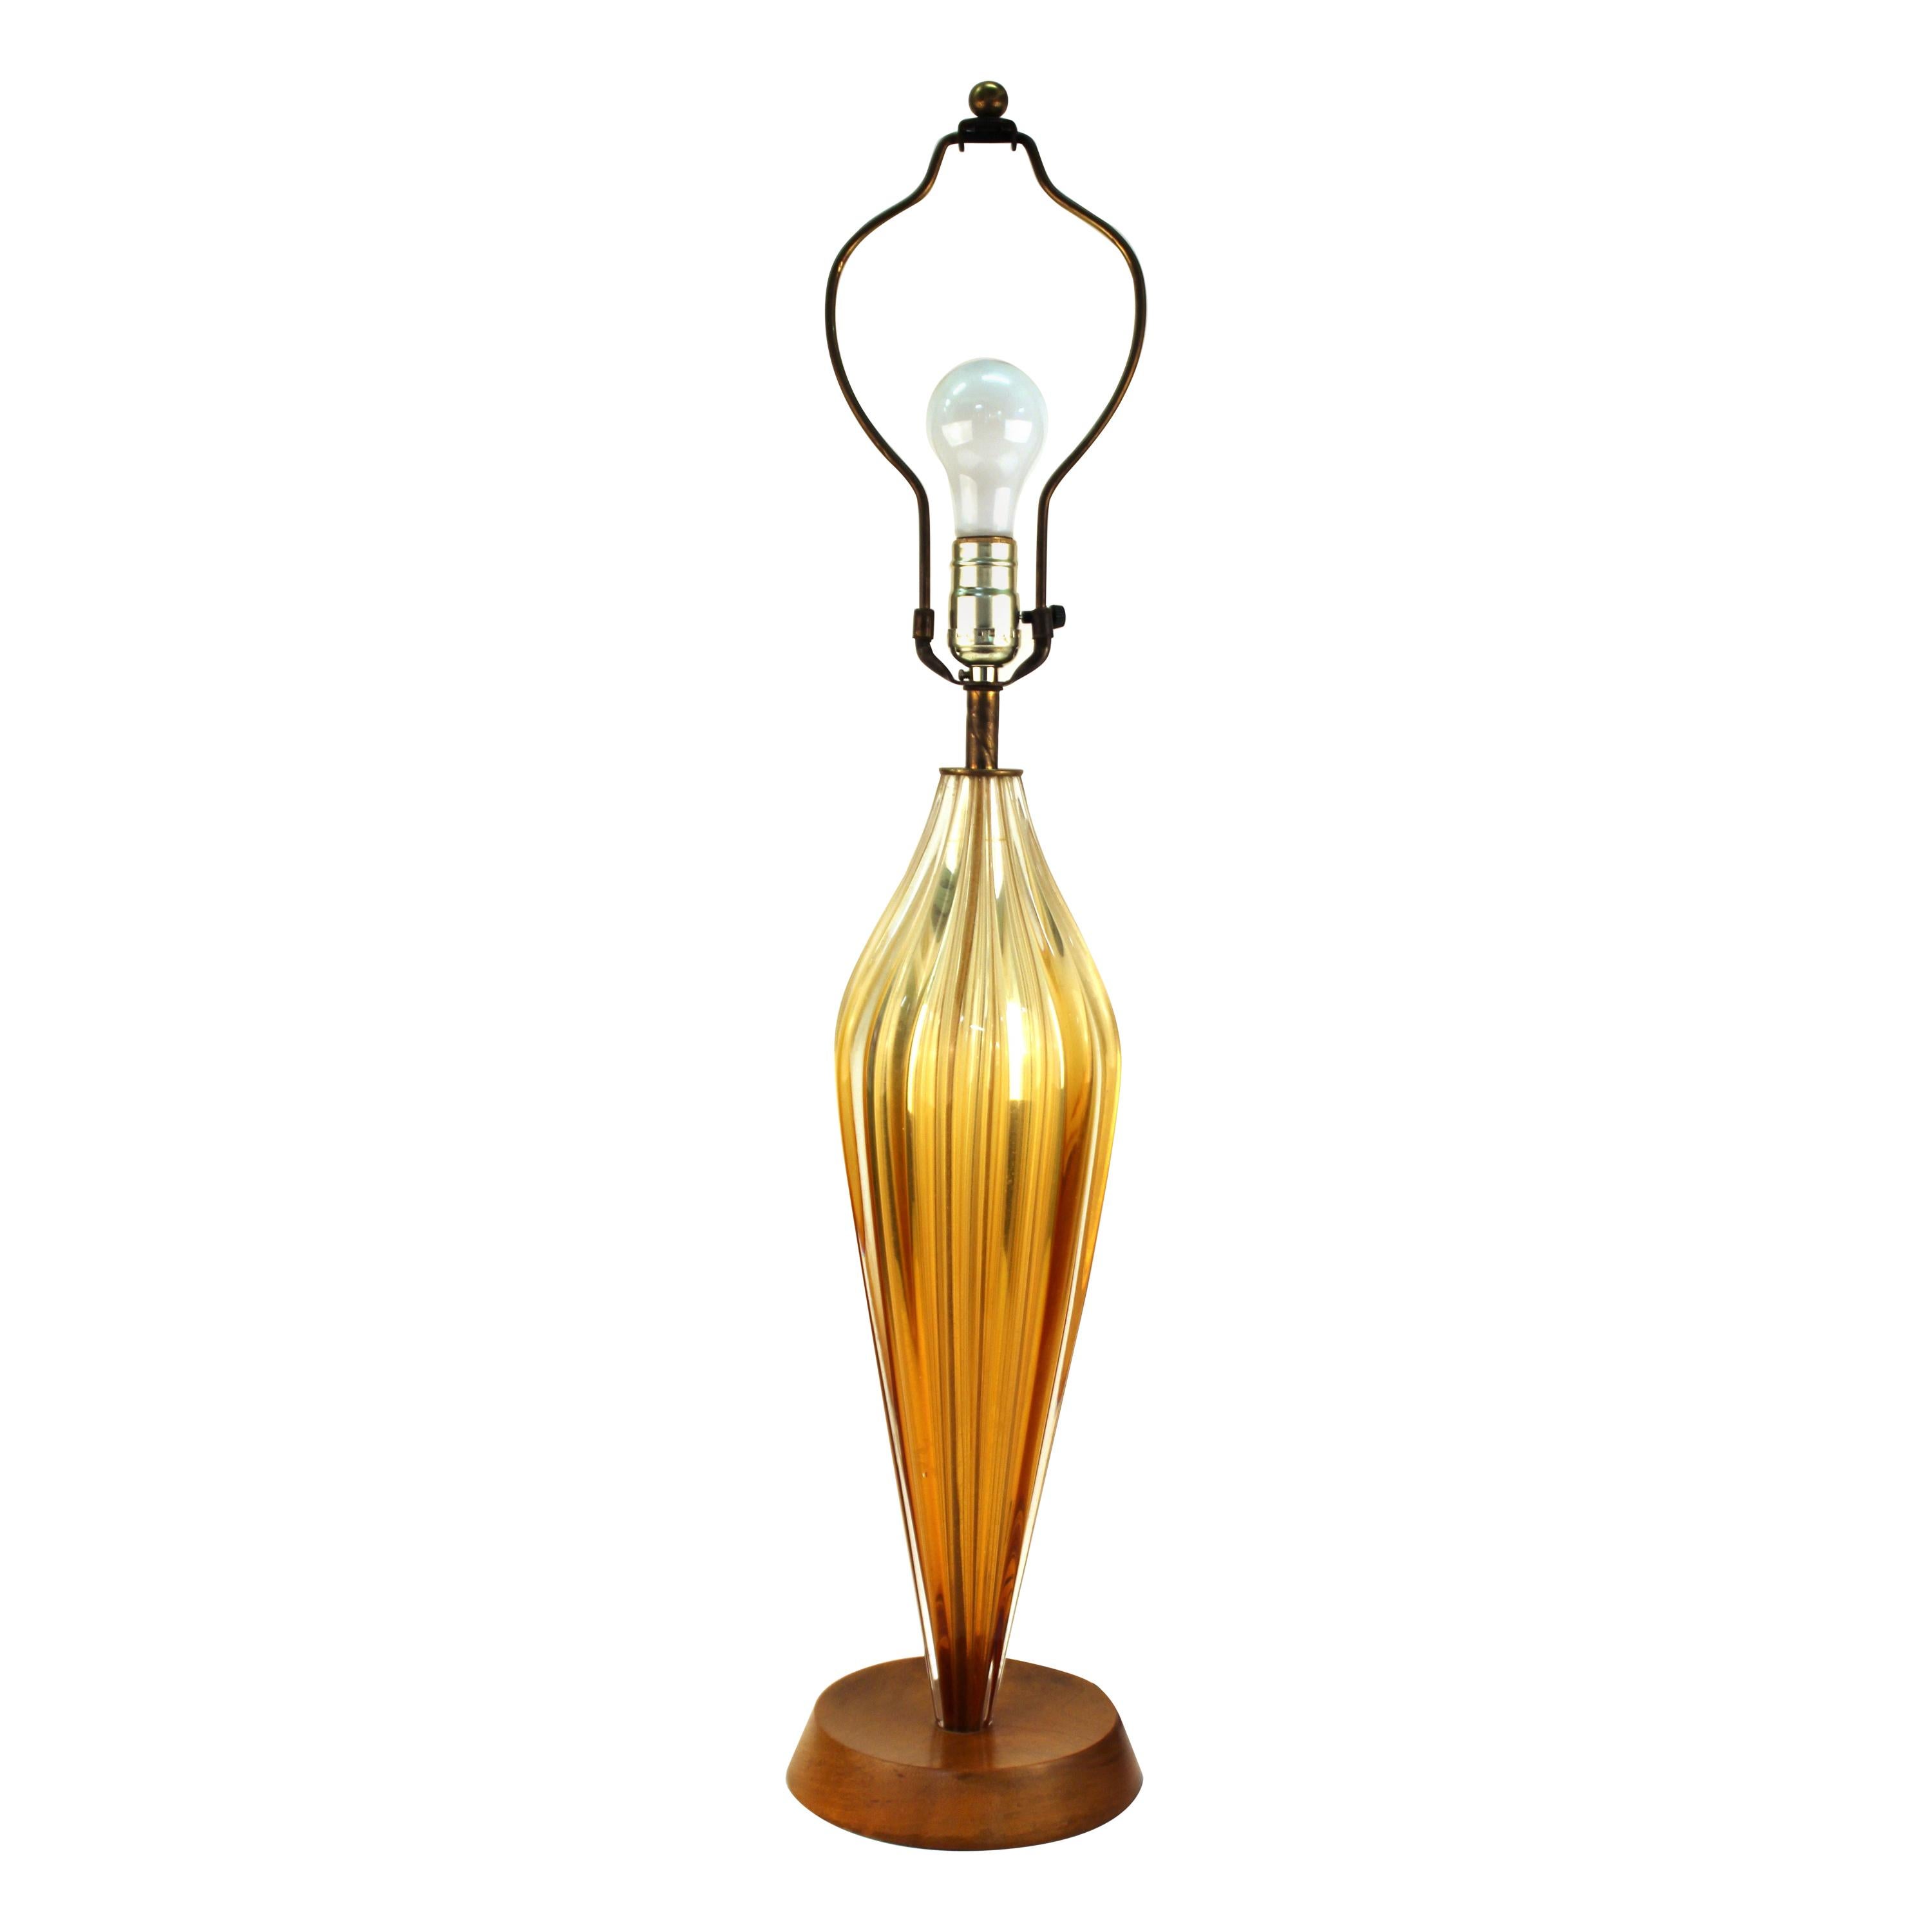 Italian Mid-Century Modern Glass Table Lamp